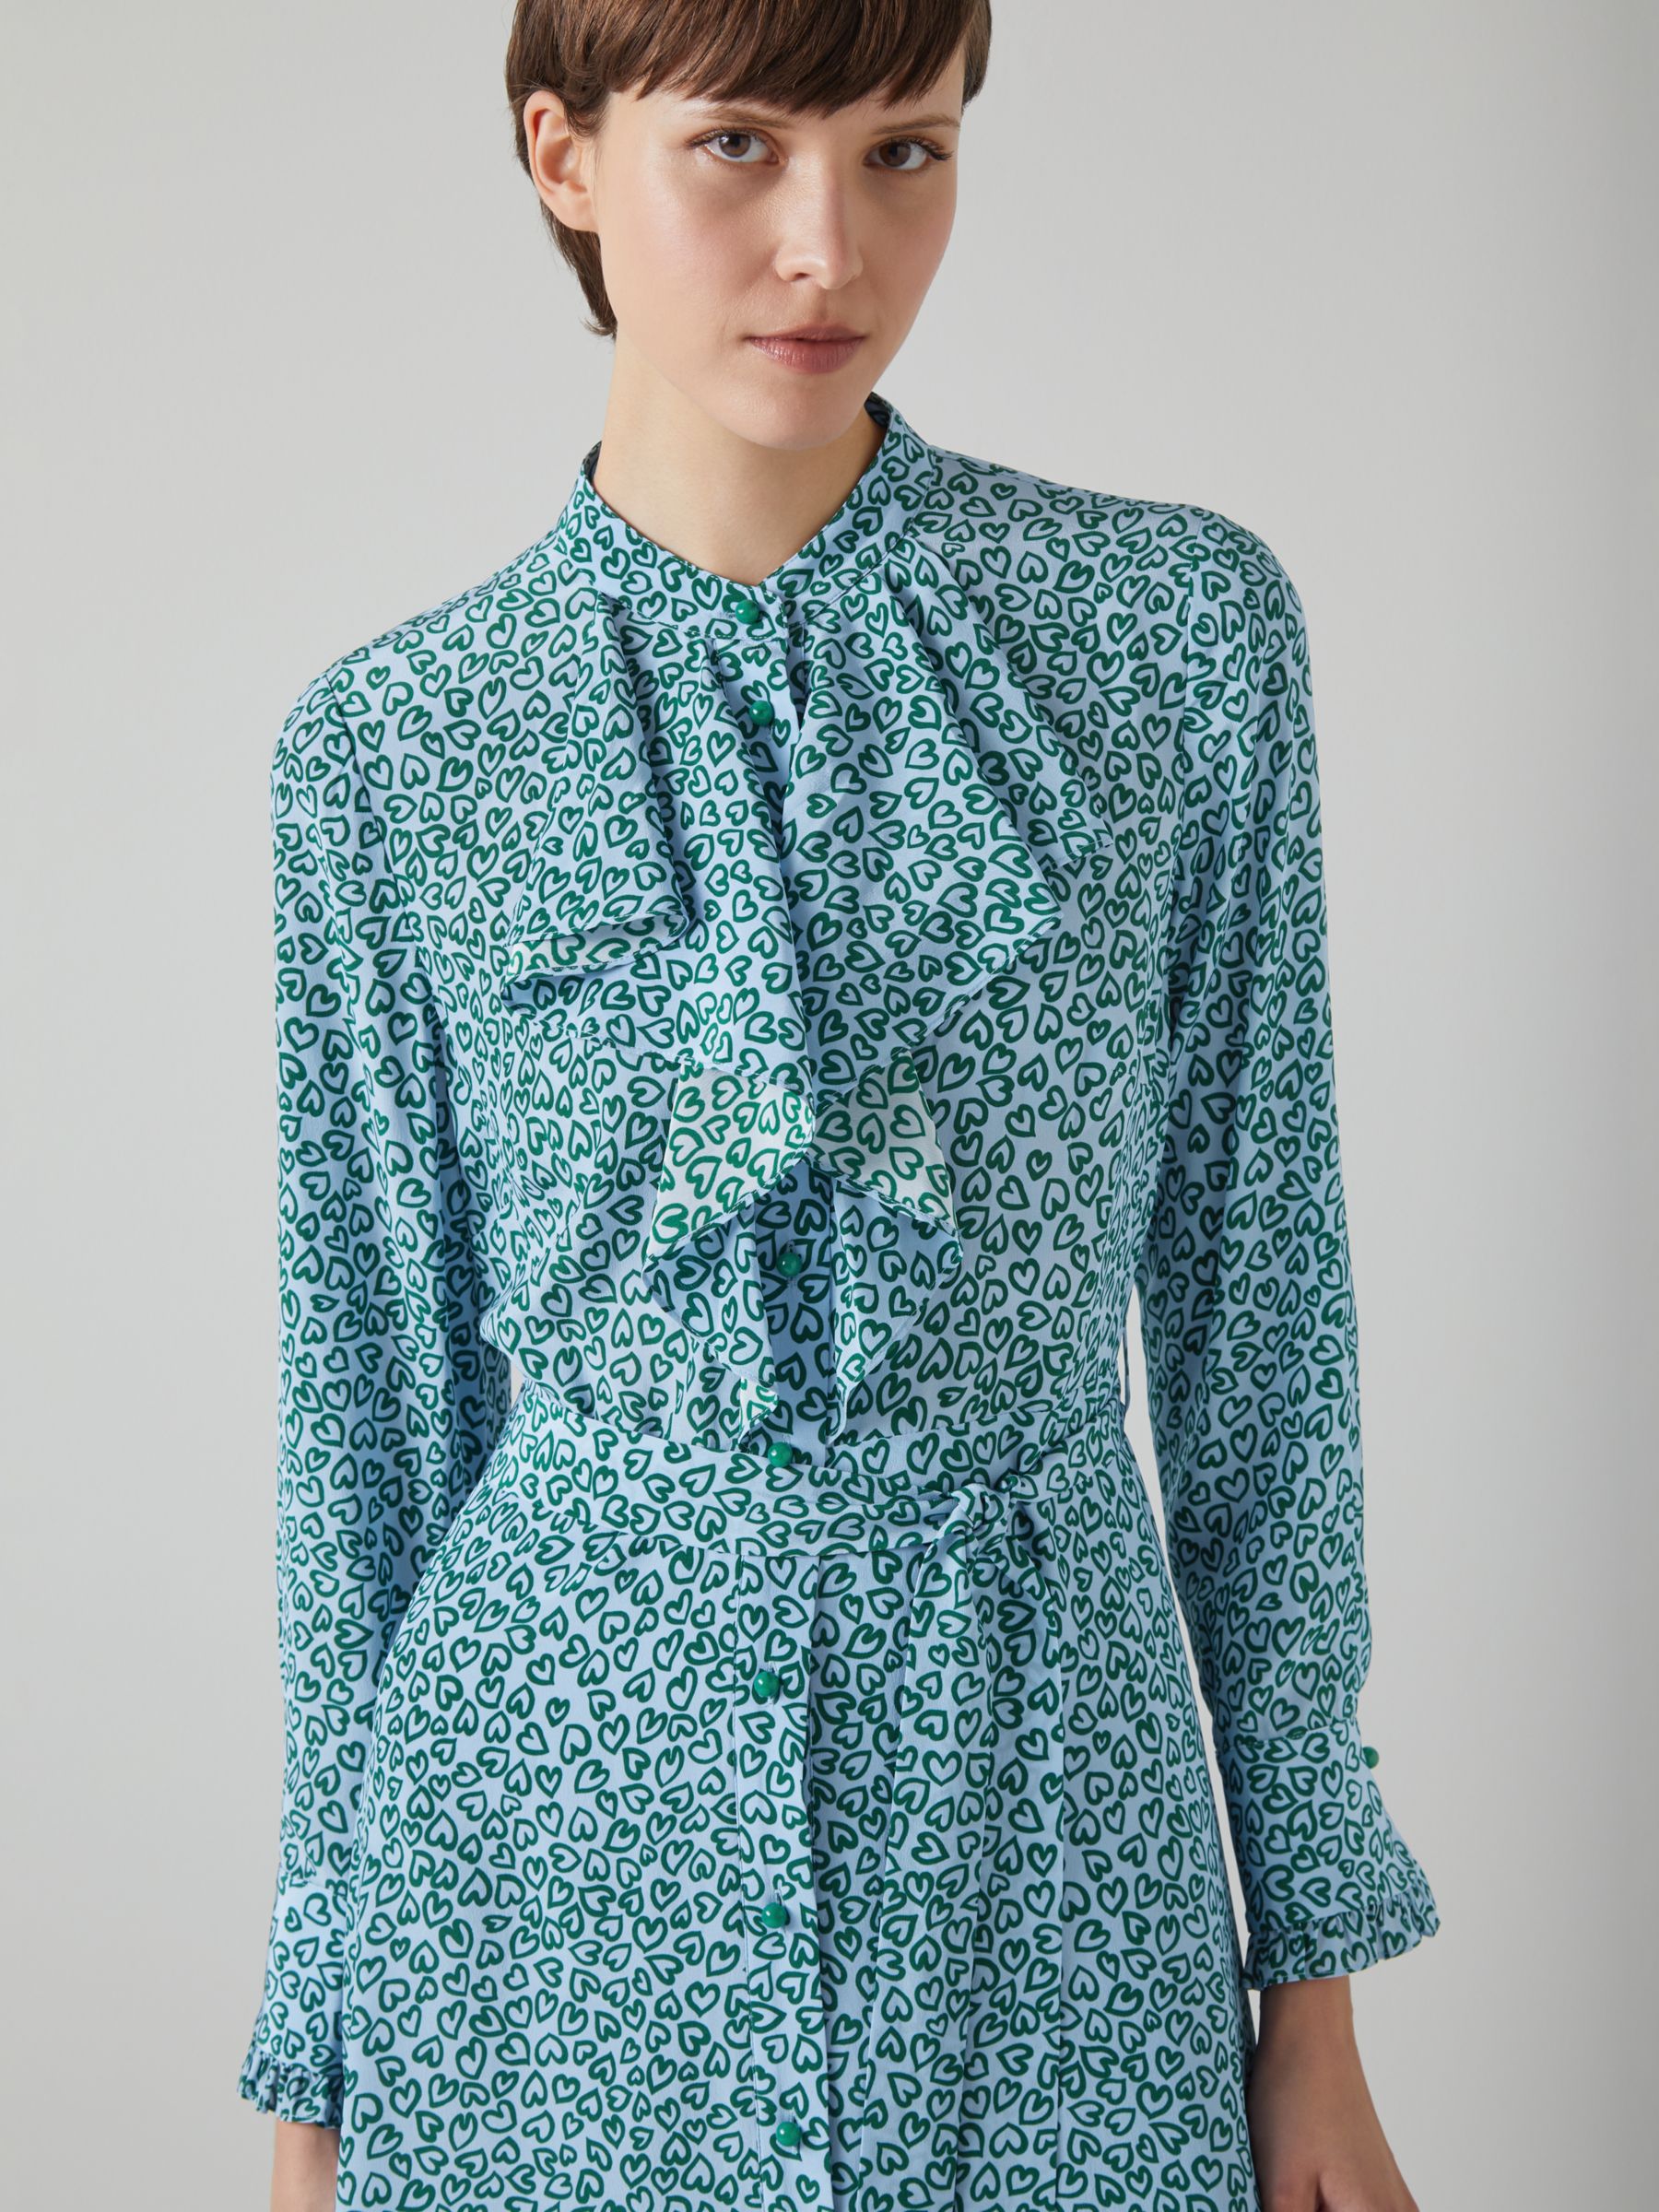 L.K.Bennett Soni Heart Print Silk Dress, Multi Green/Blue, 10